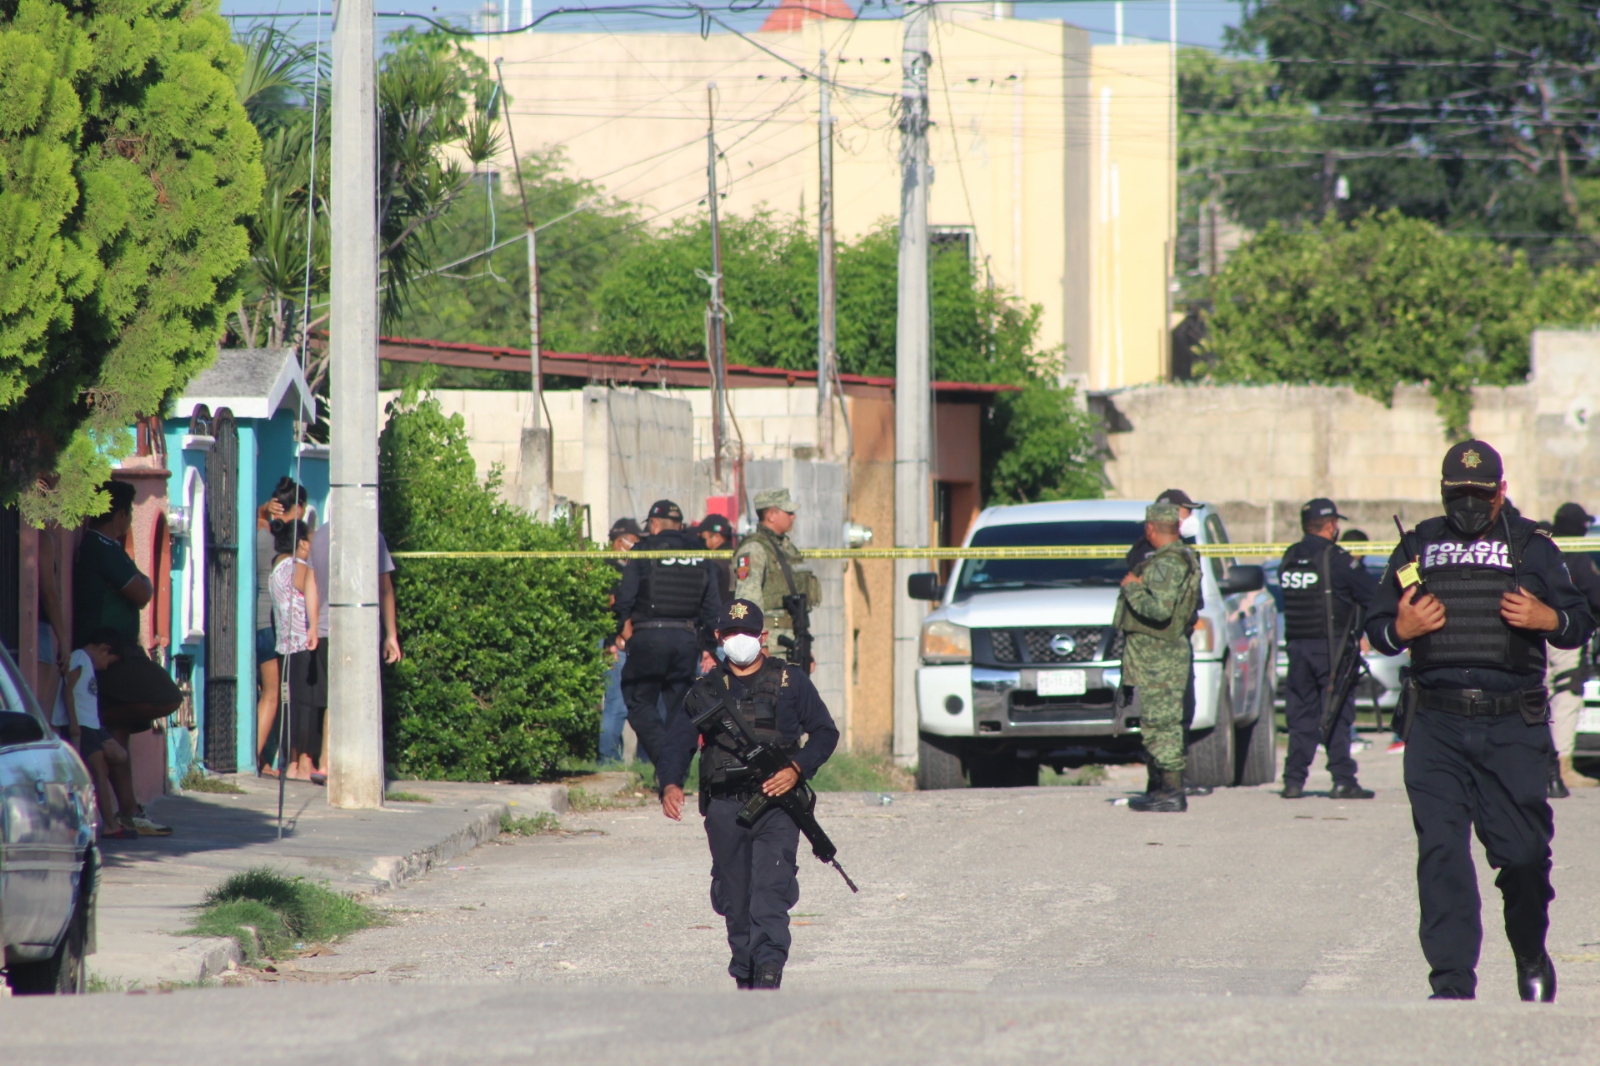 Suman 80 personas detenidas en Yucatán por narcomenudeo; un niño de 7 años, entre los involucrados